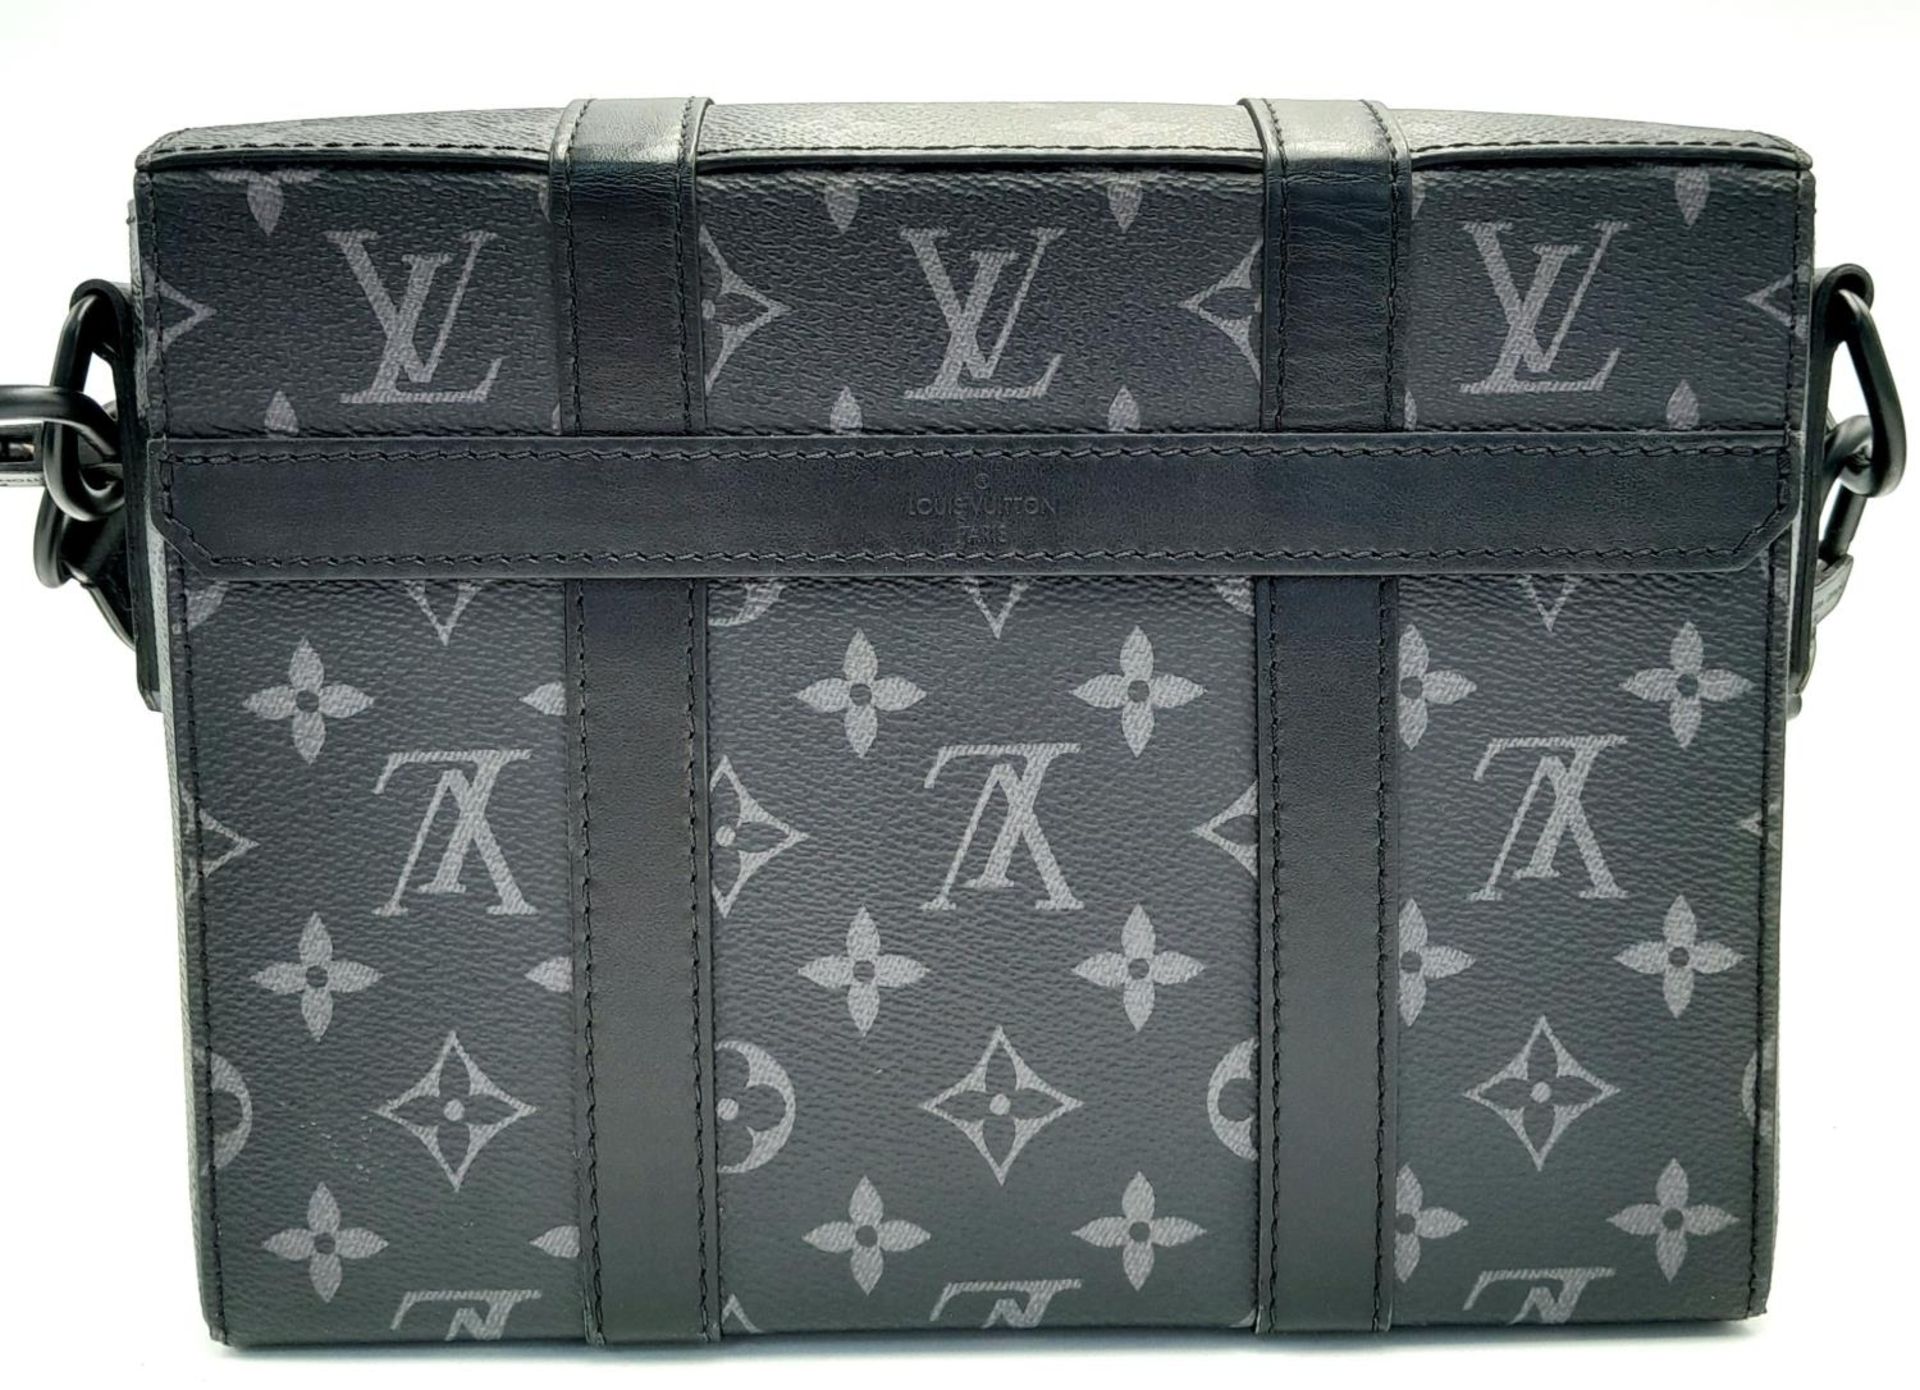 A Louis Vuitton Black Eclipse Trunk Messenger Bag. Monogramed canvas exterior with black-toned - Bild 4 aus 10